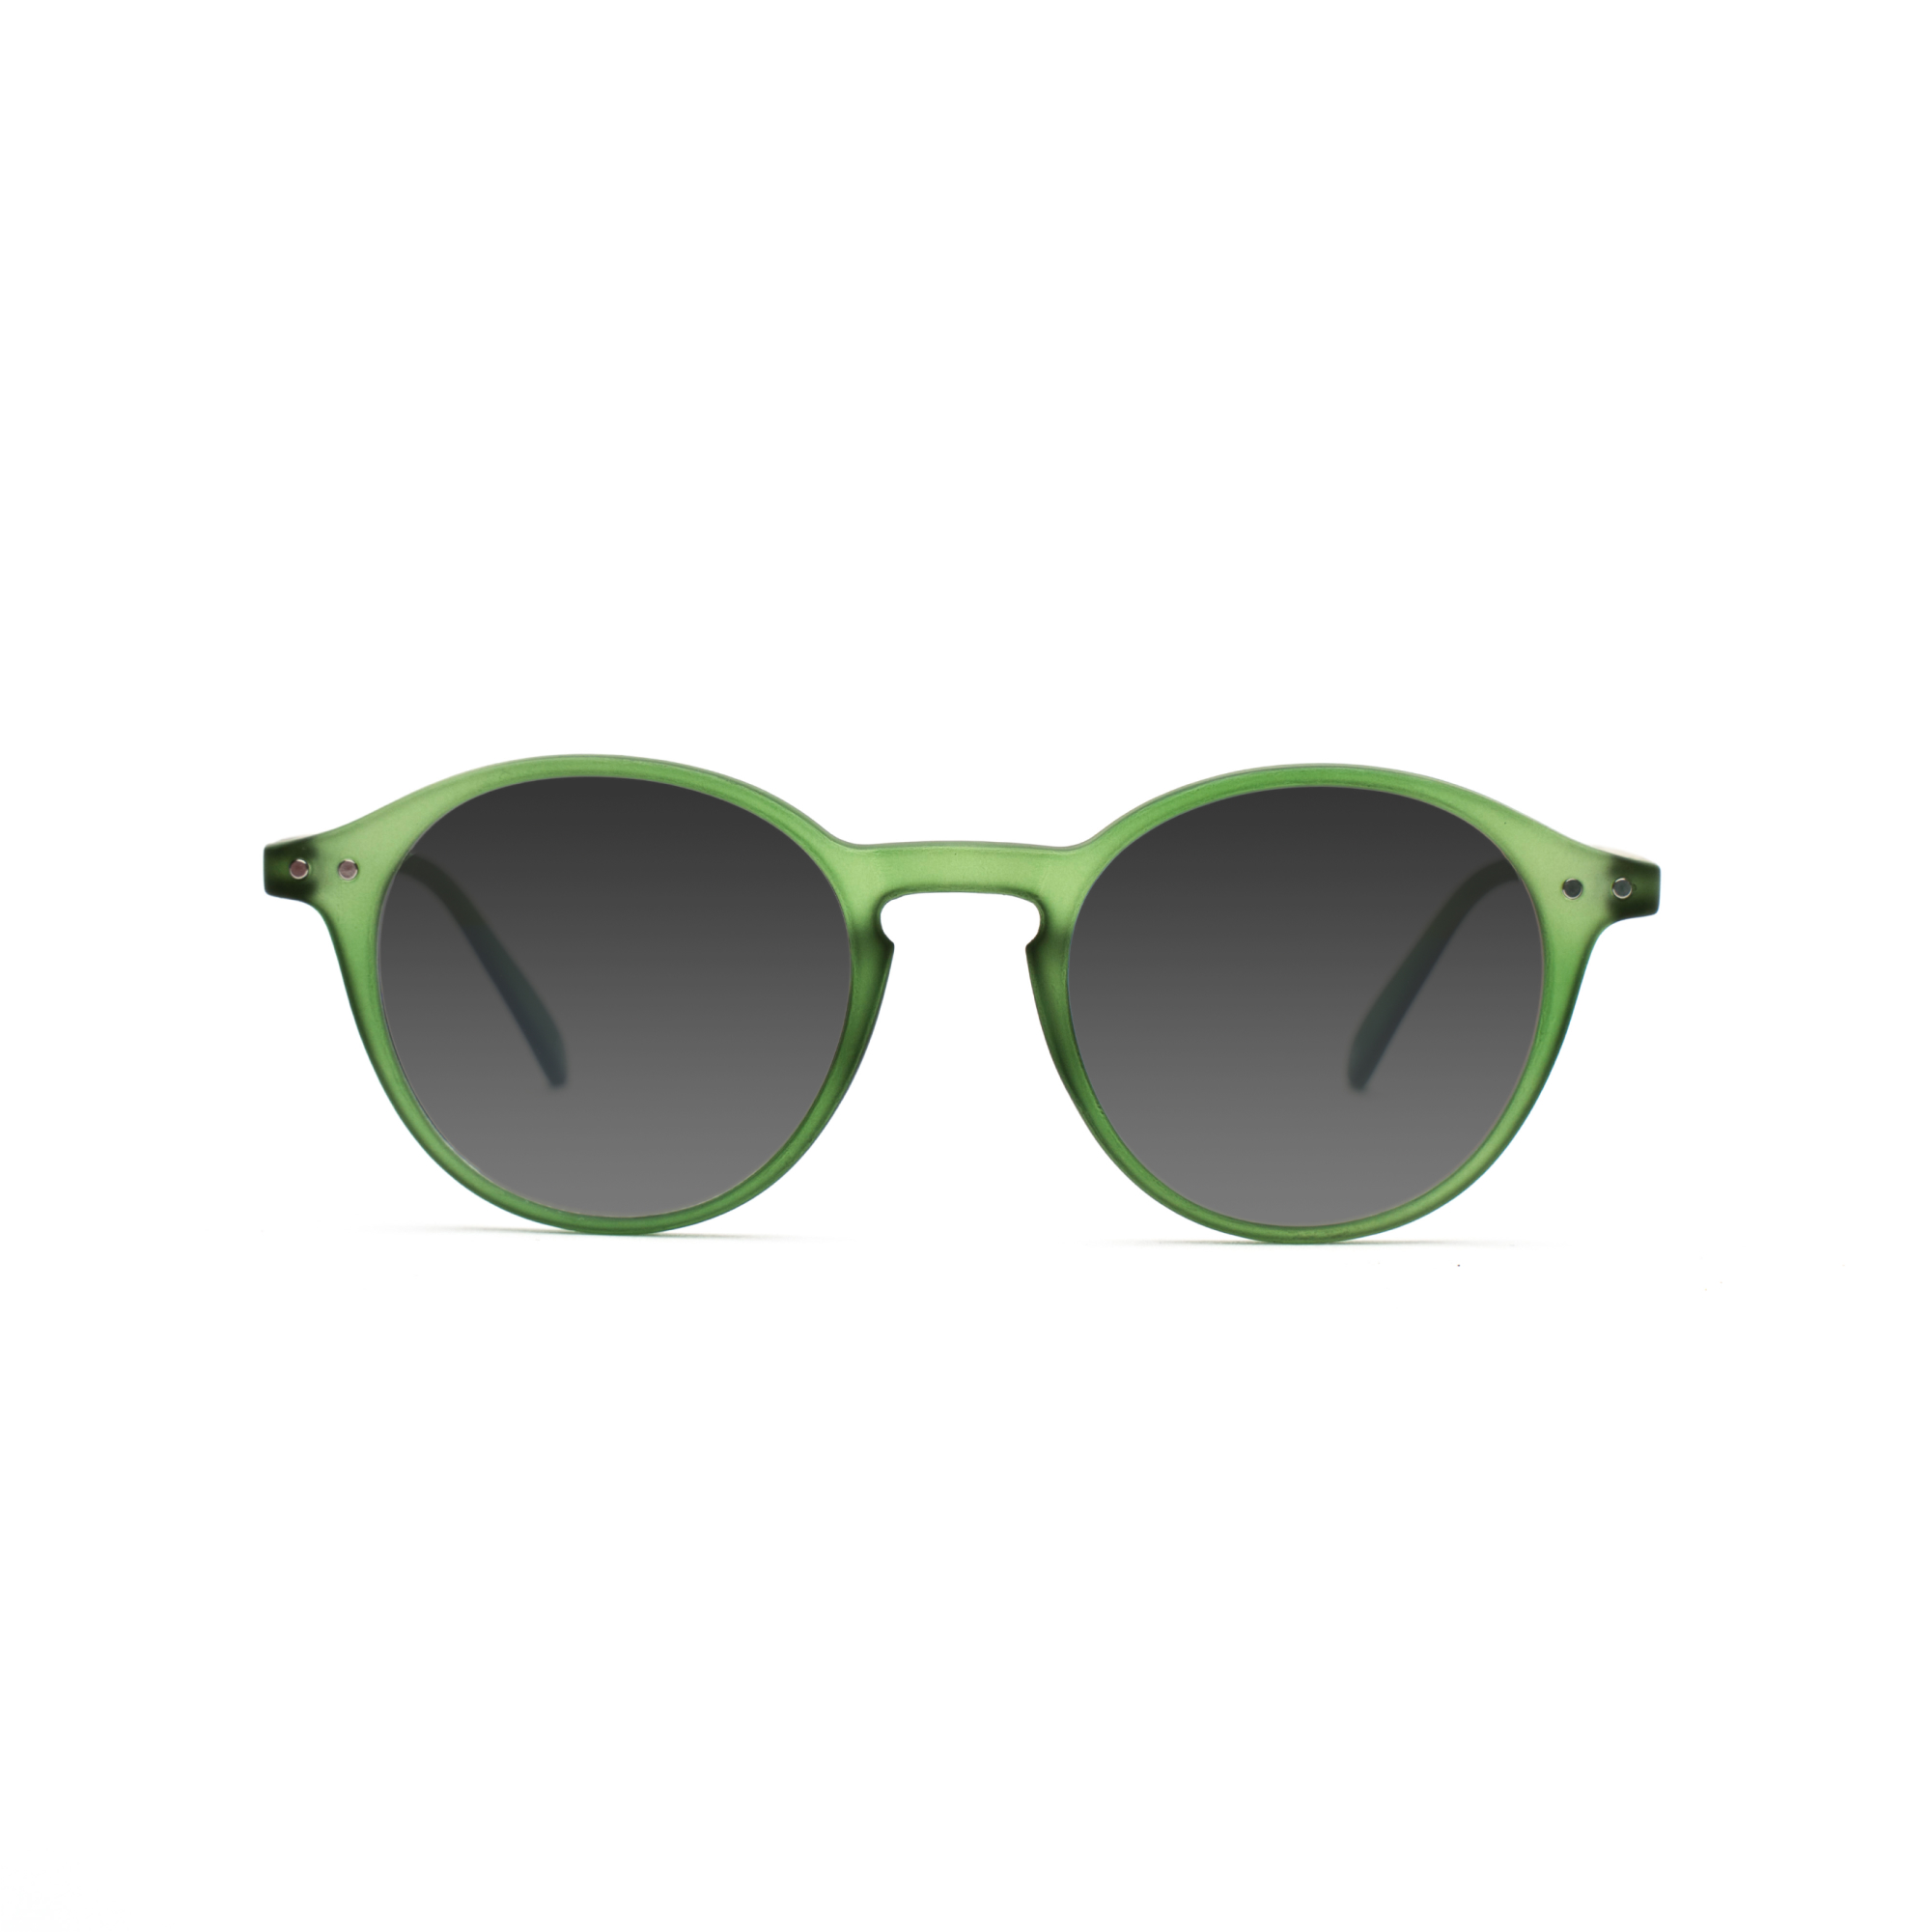 Women's transition glasses – Luca GEN 8 w - Green